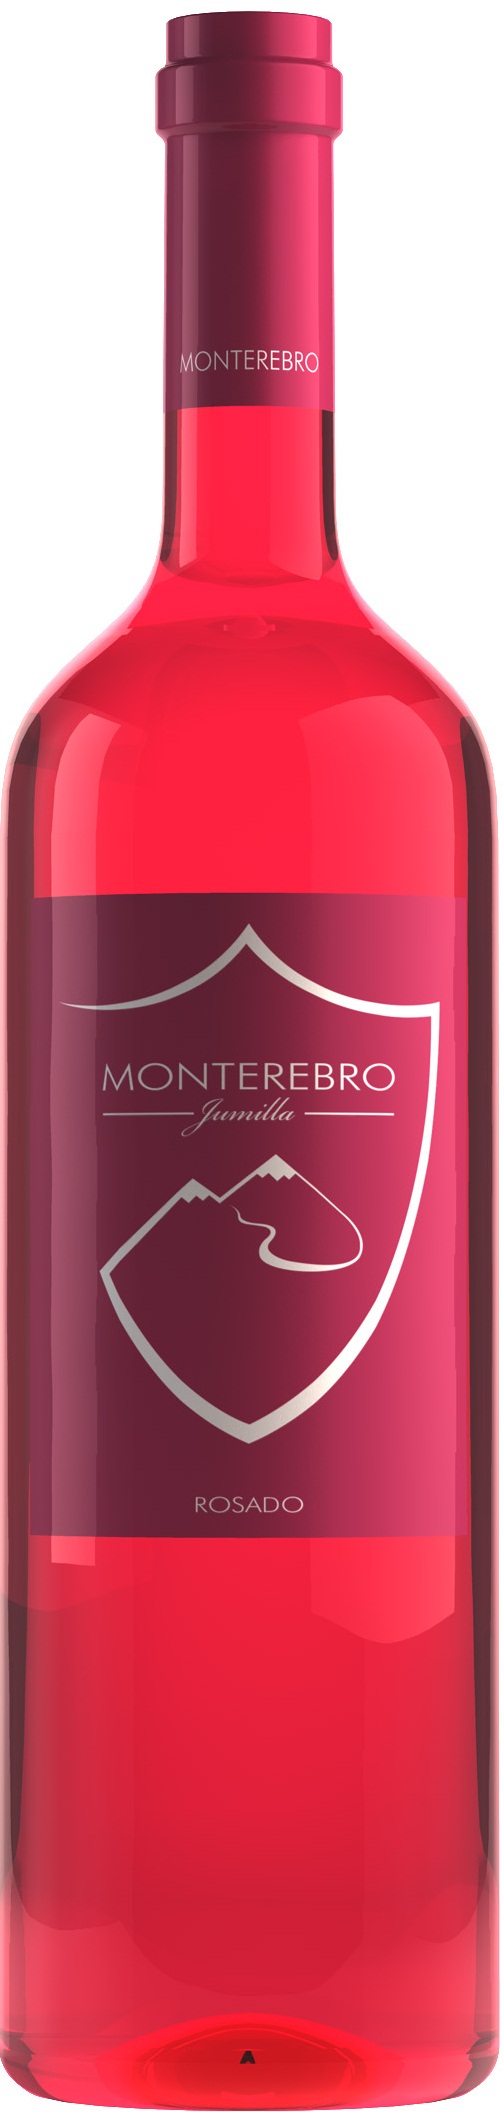 Logo del vino Monterebro Rosado